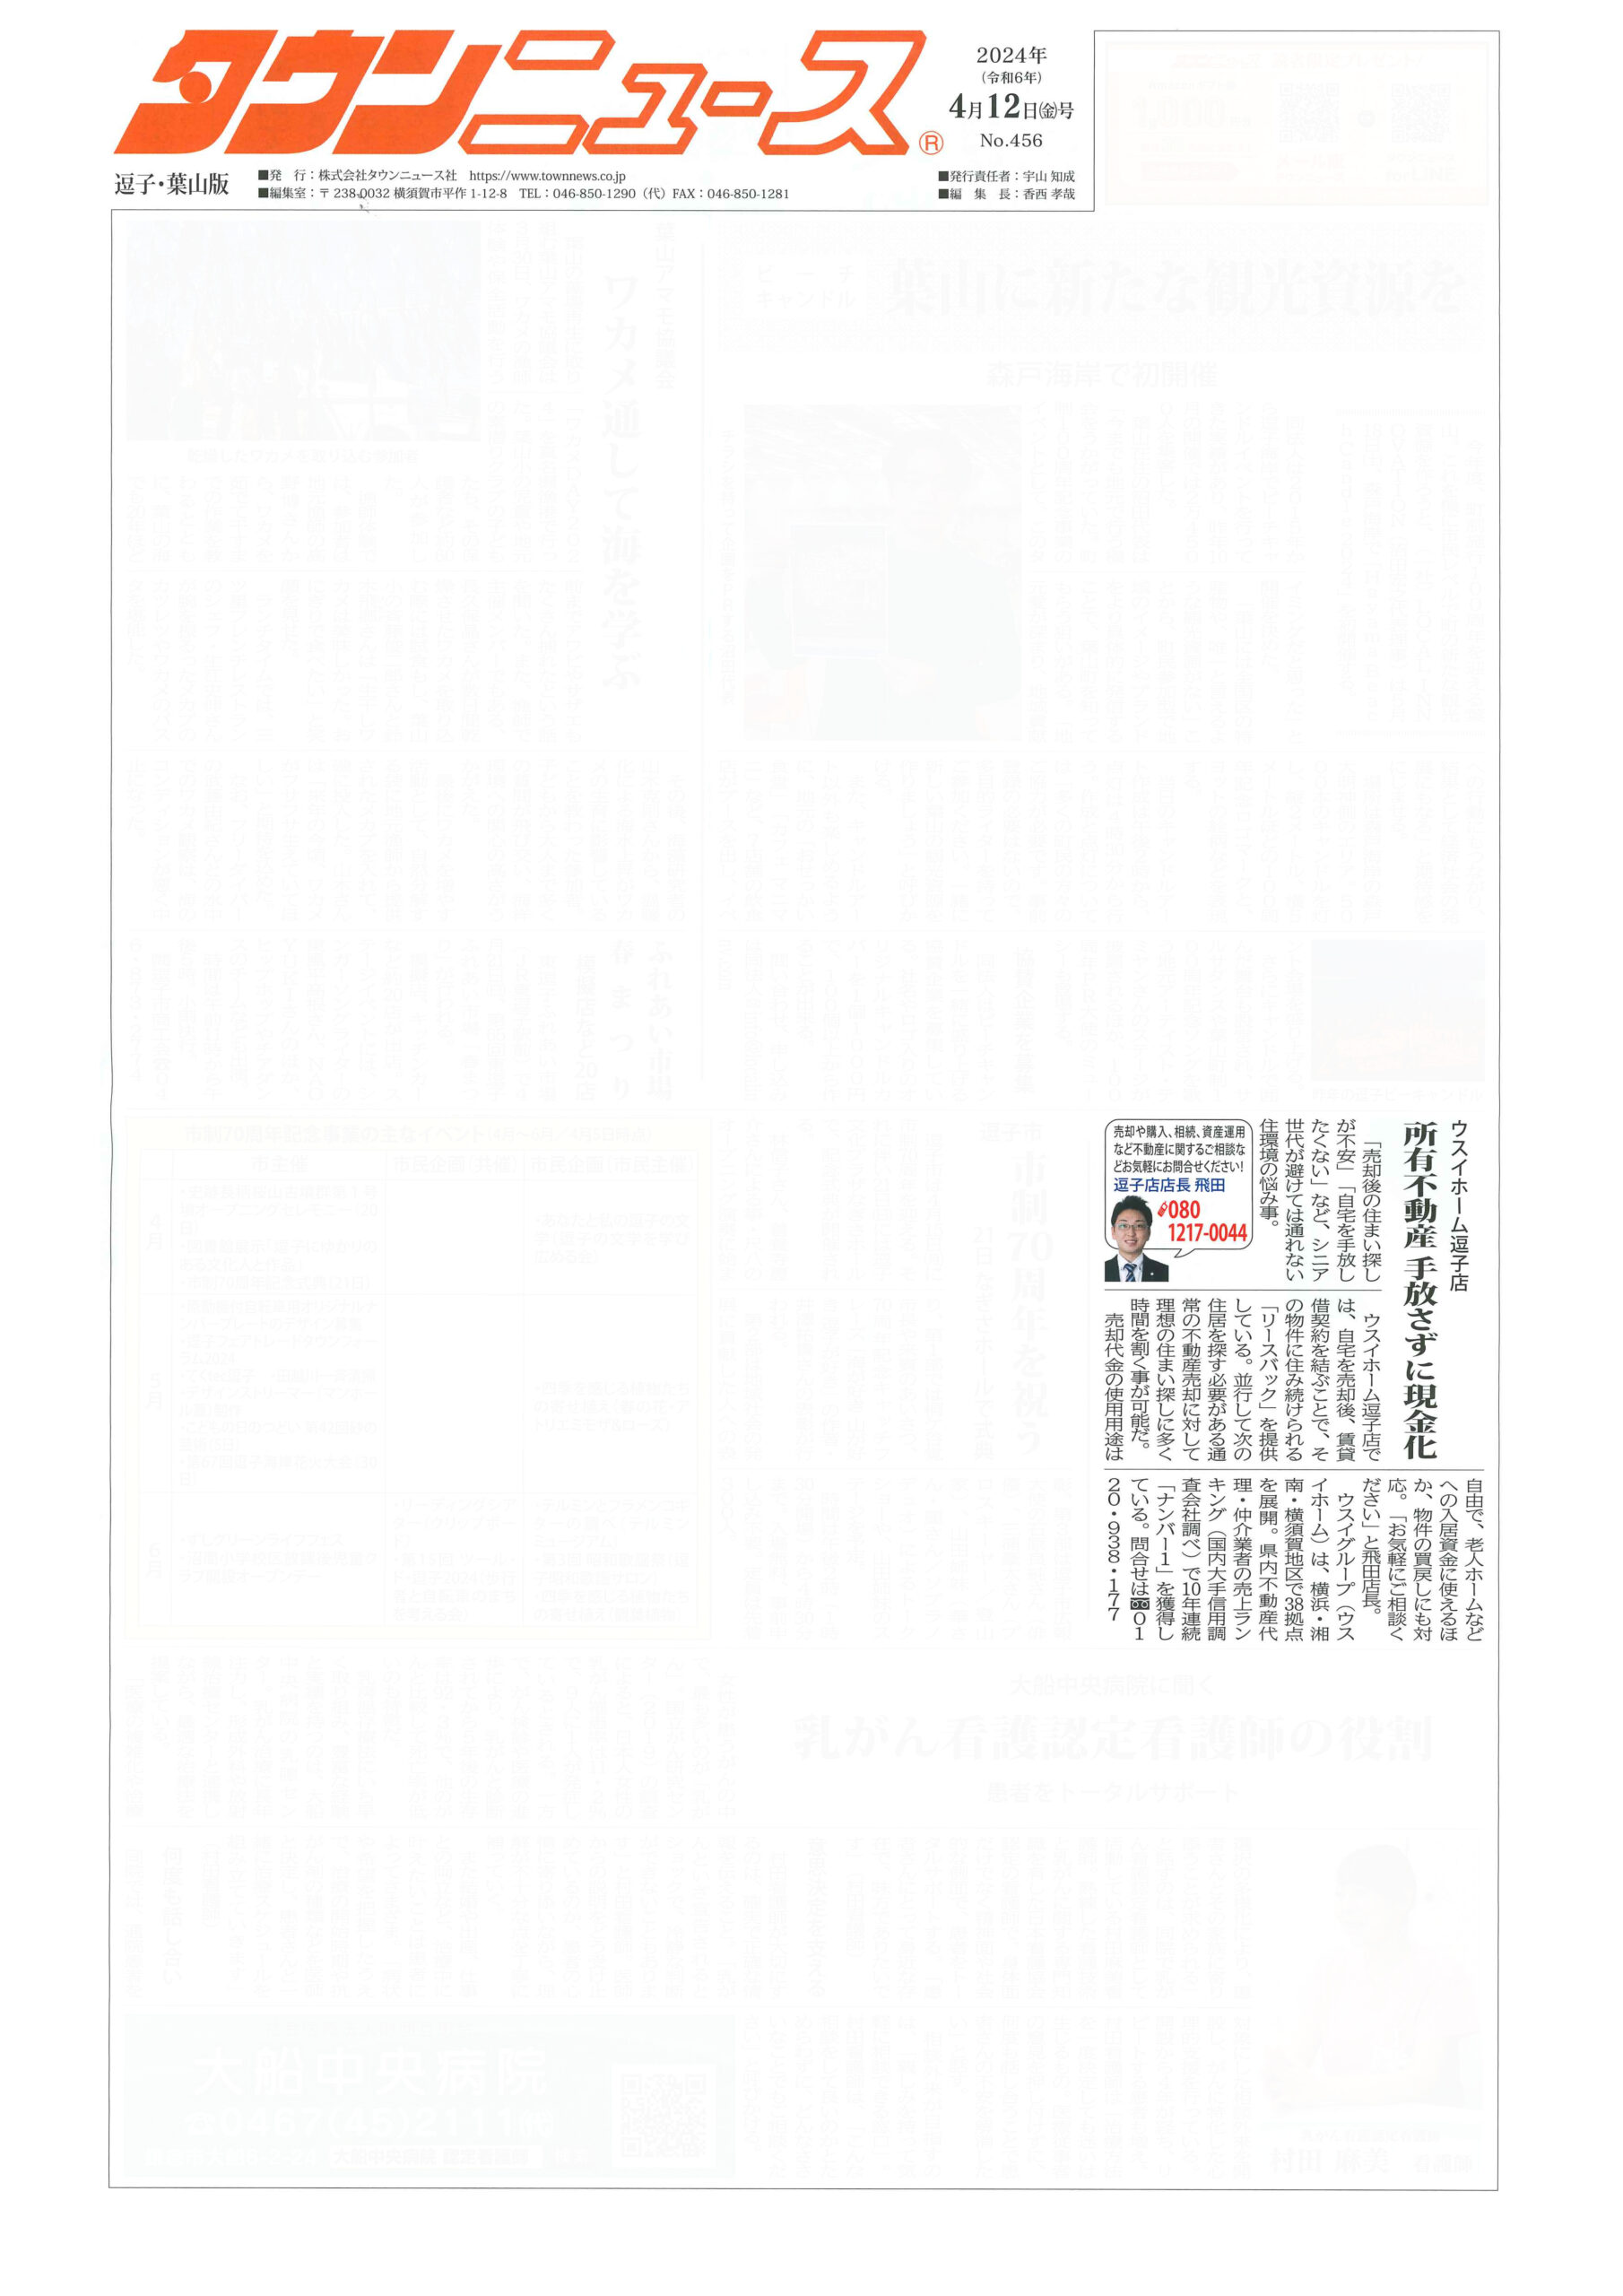 2024.04.12_タウンニュース逗子・葉山版‗ウスイホーム逗子店_不動産買取